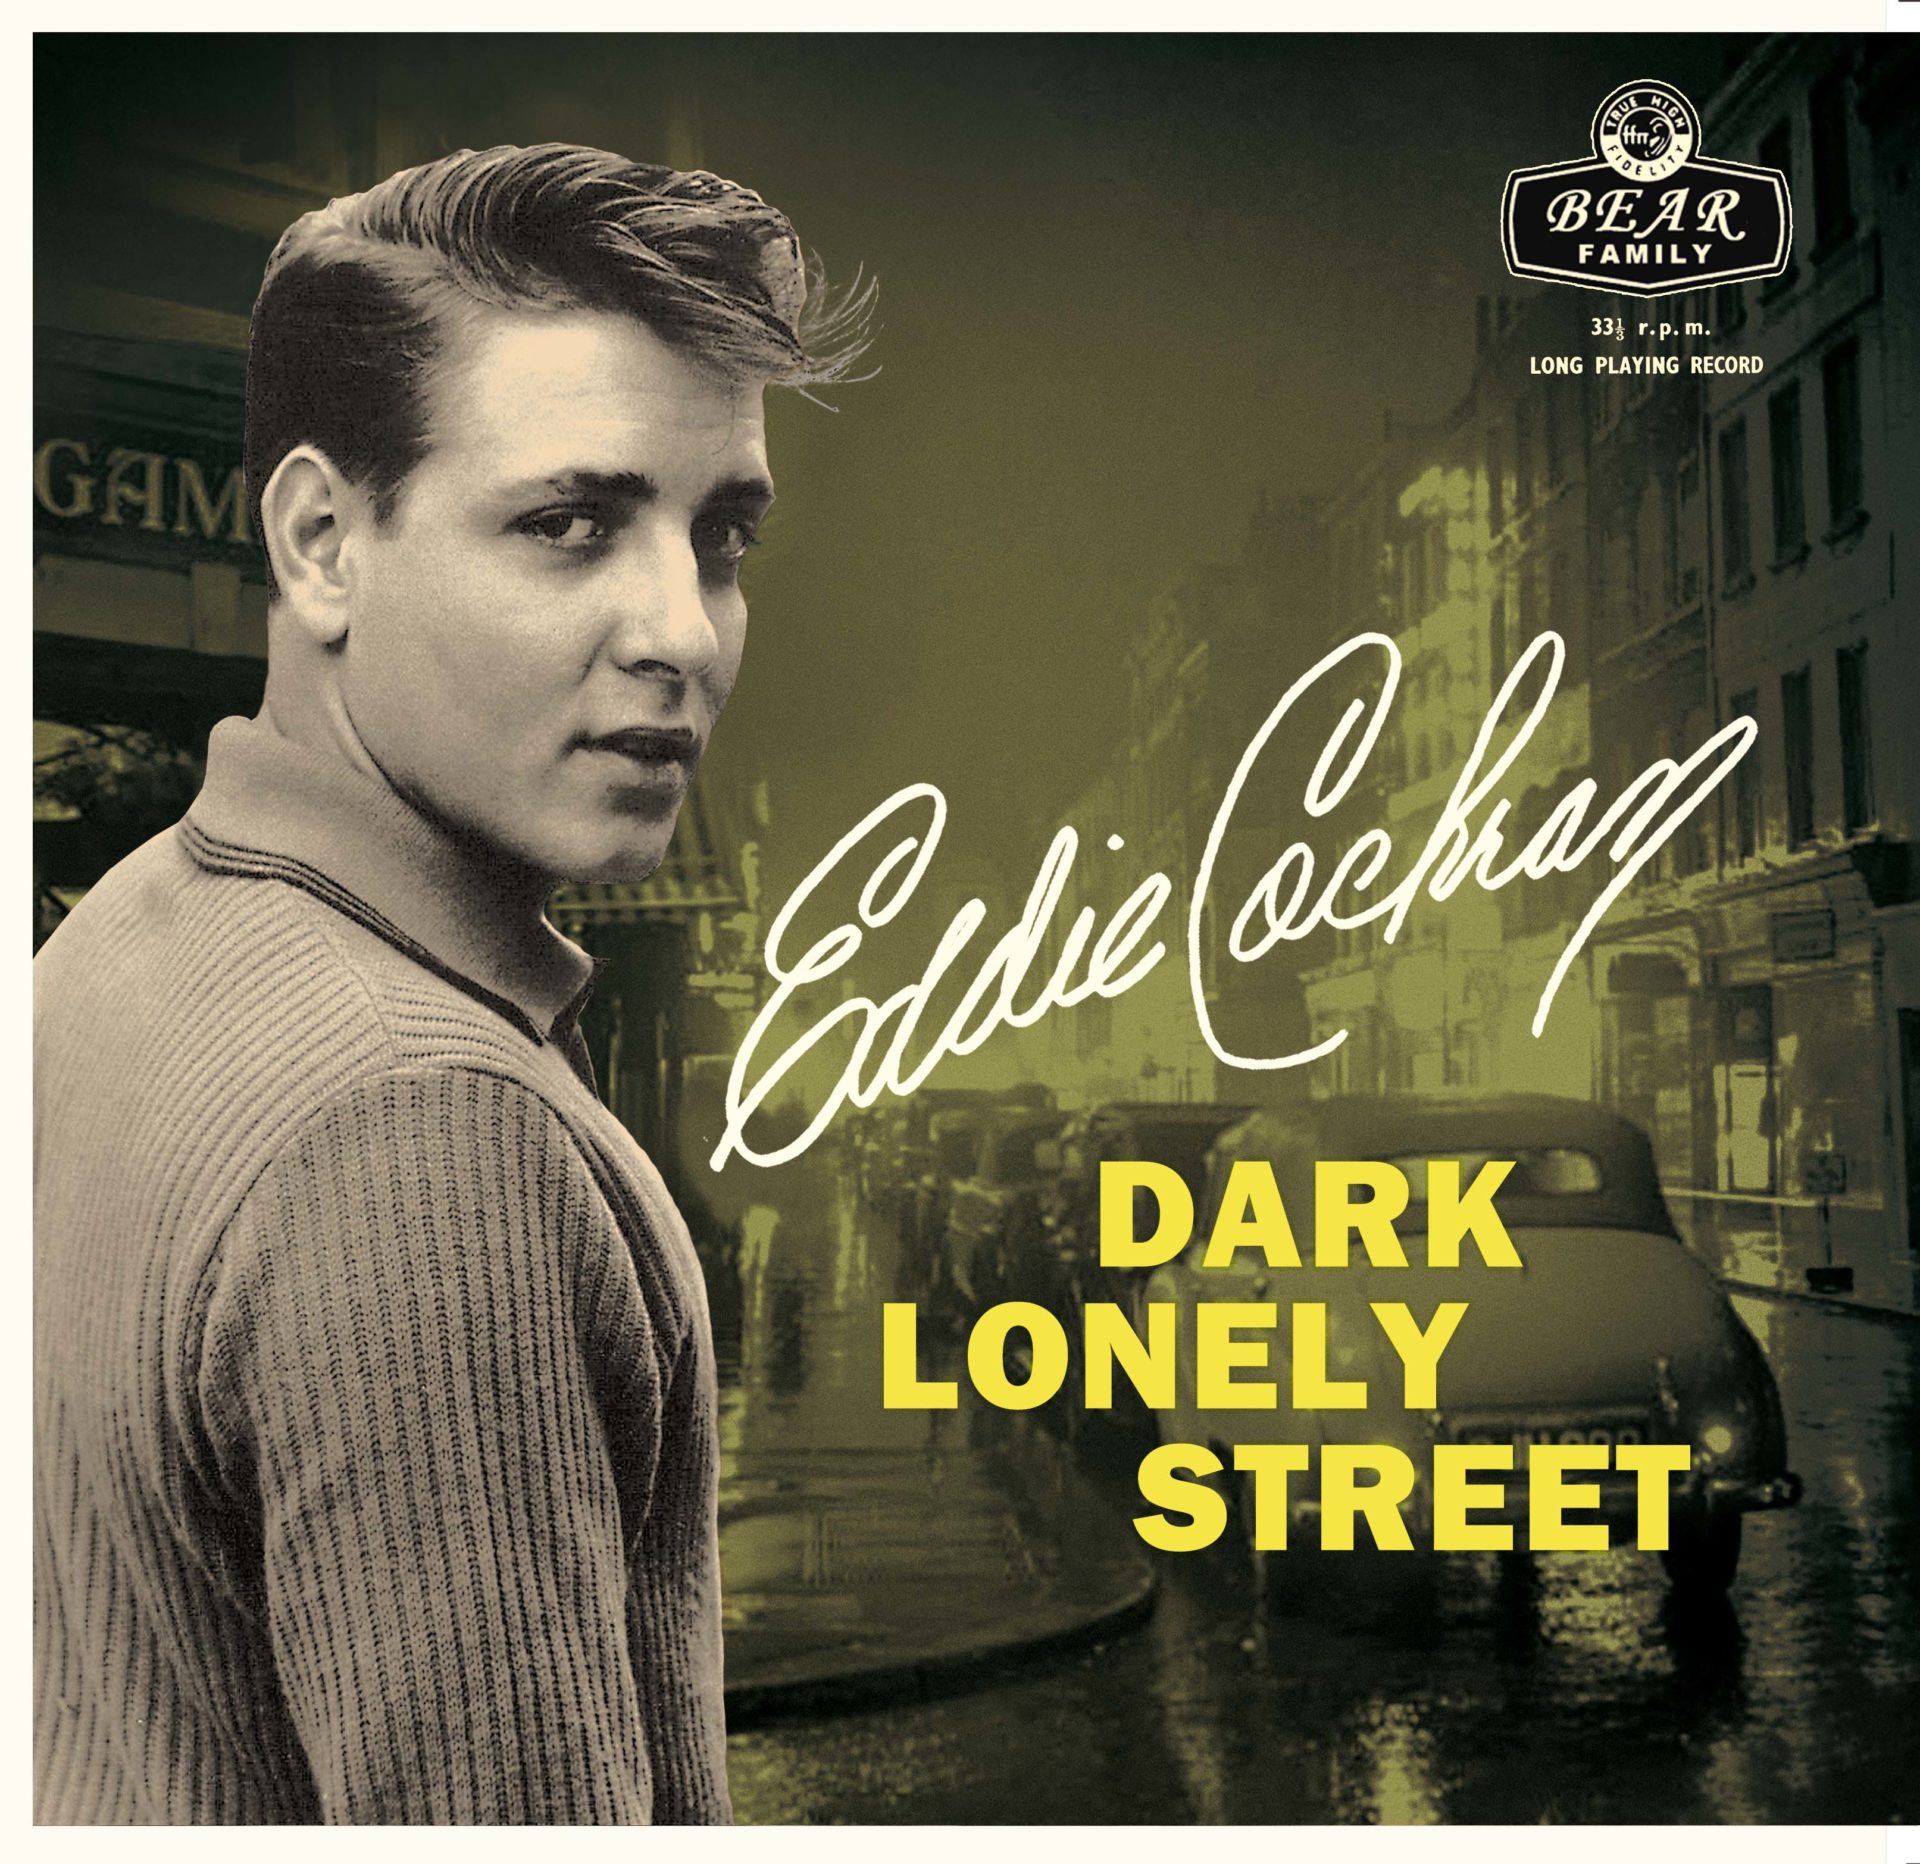 Dark Lonely Street – Eddie Cochran